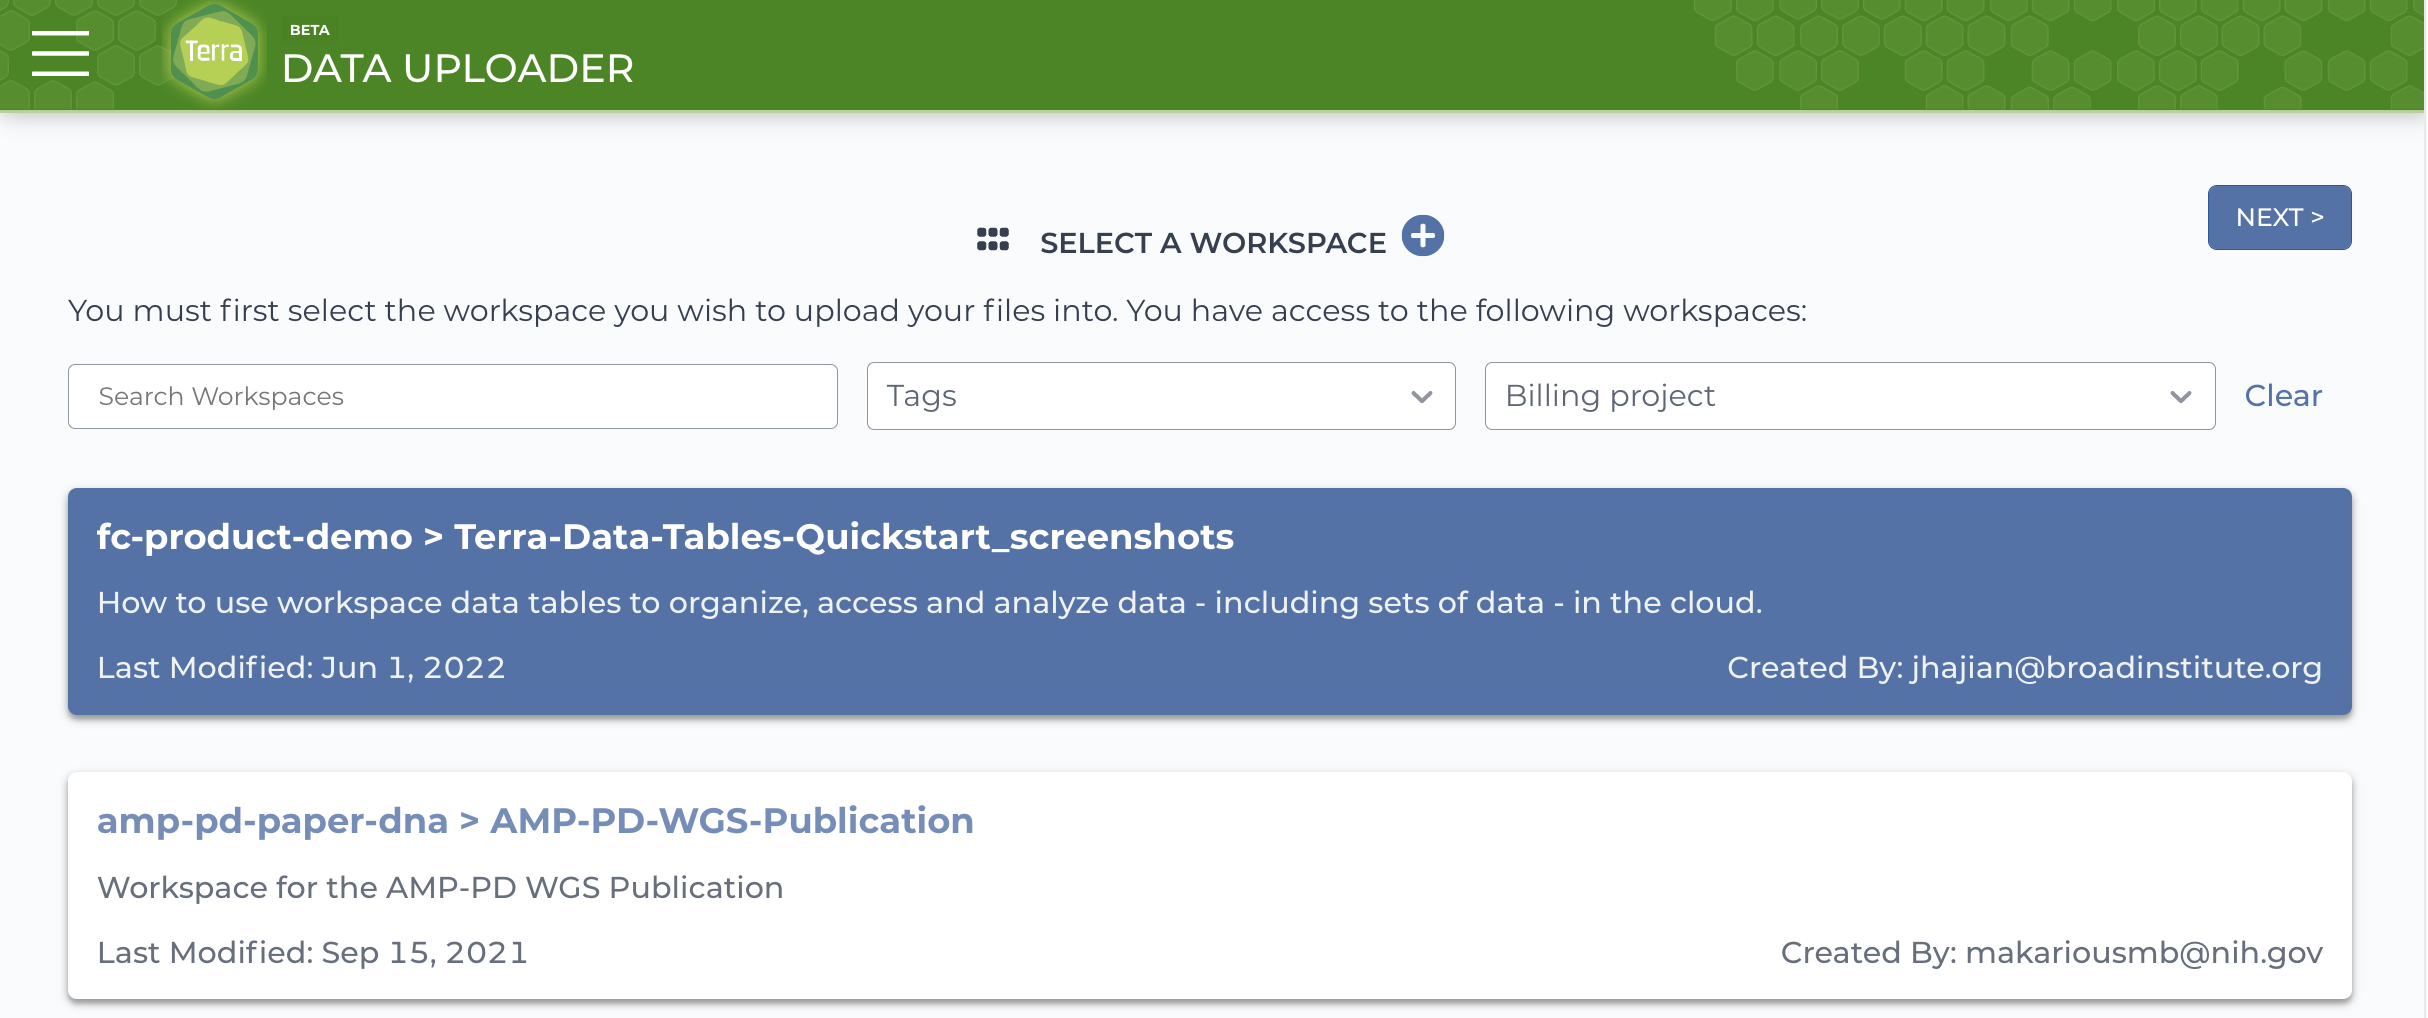 Data-uploader_Change-workspace_Screen_shot.png